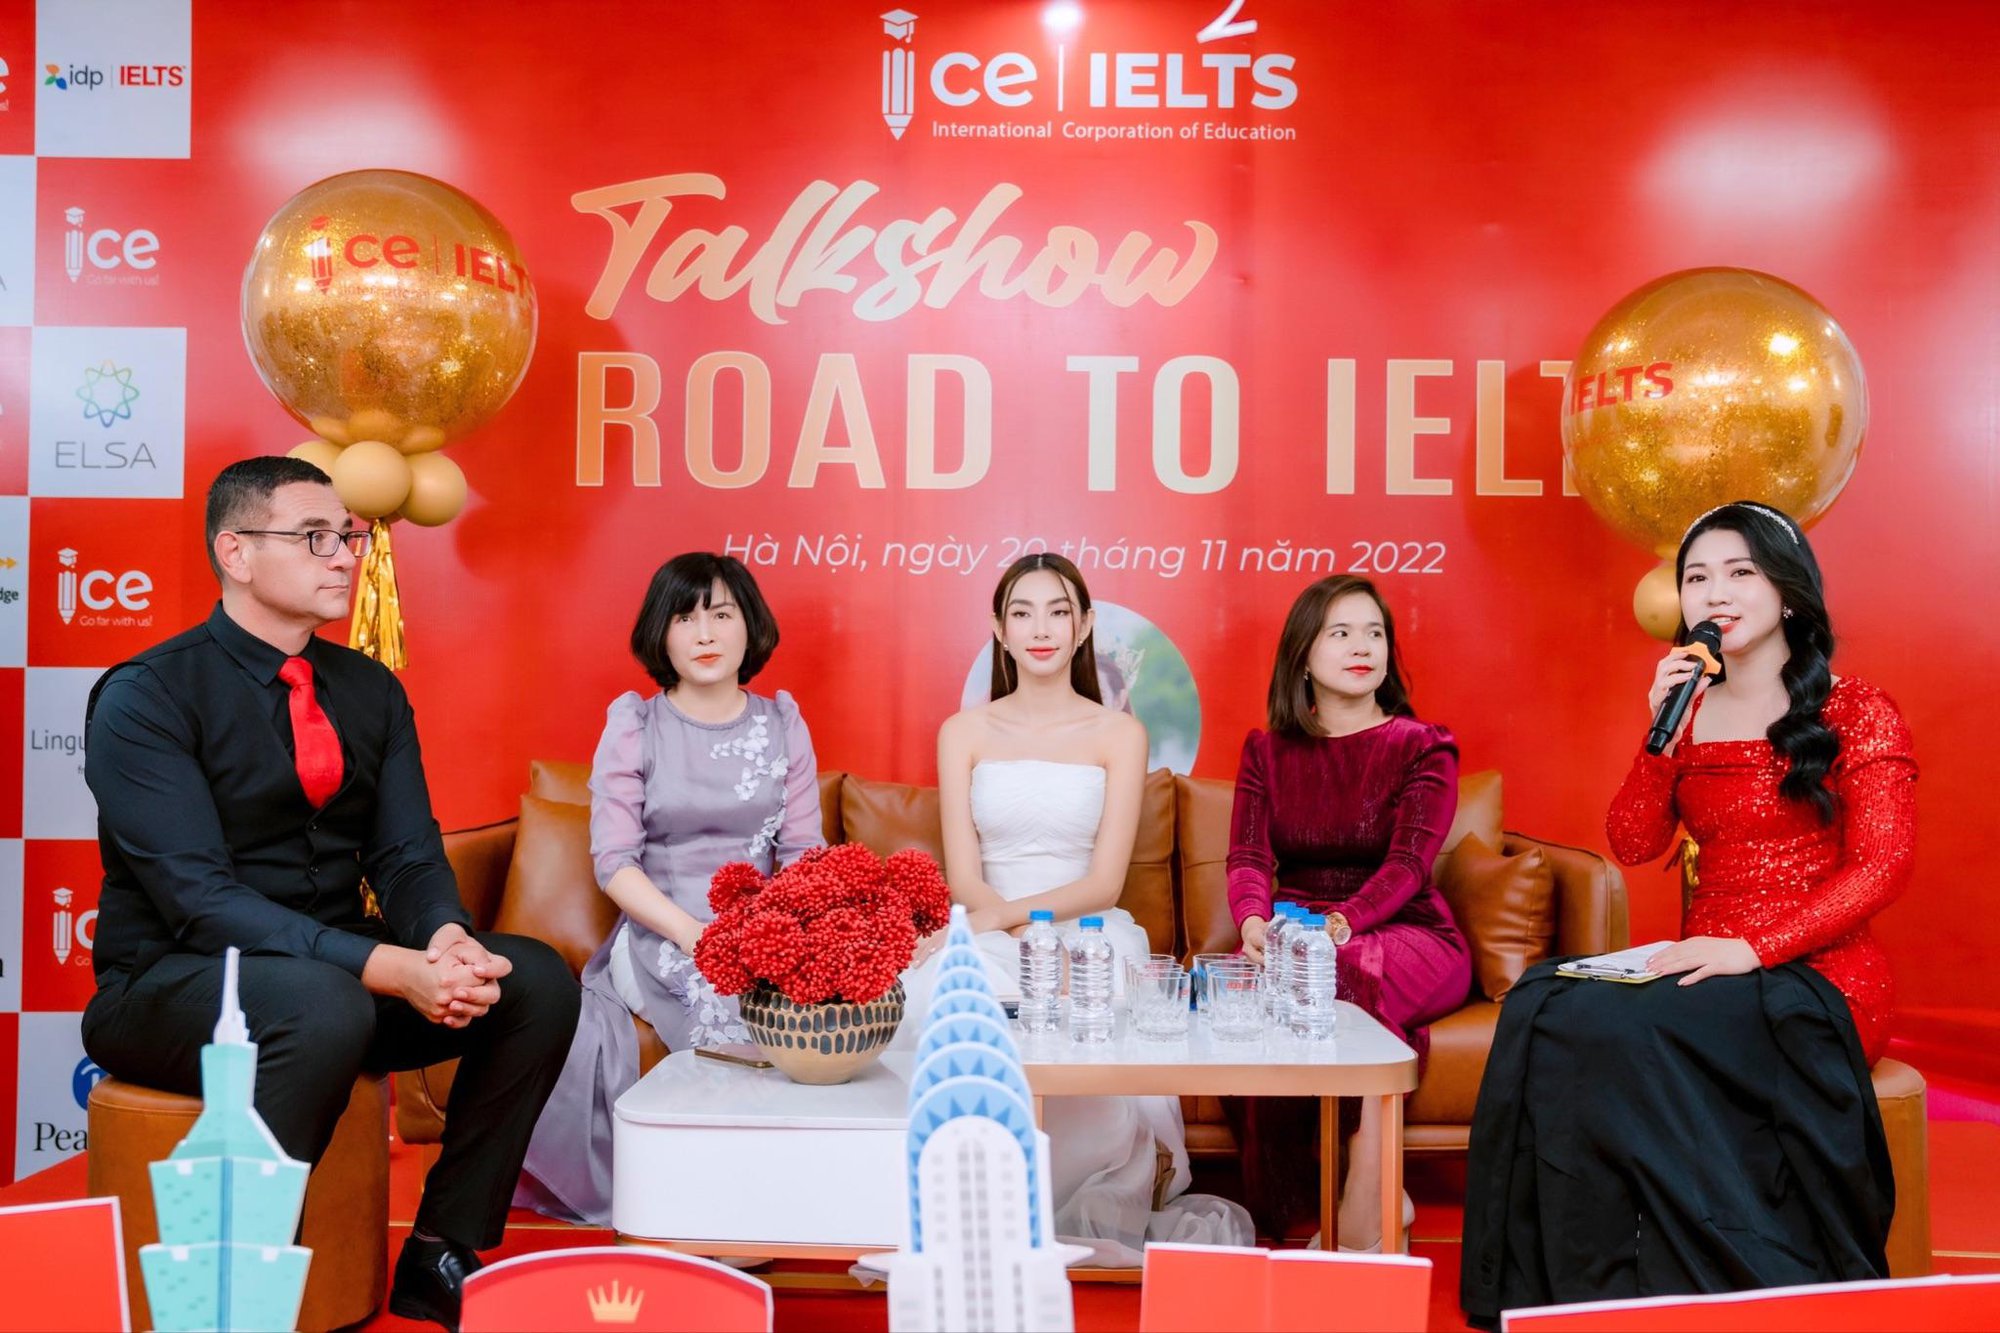 Hàng ngàn người đến ICE IELTS để giao lưu cùng Hoa hậu Thuỳ Tiên - Ảnh 3.